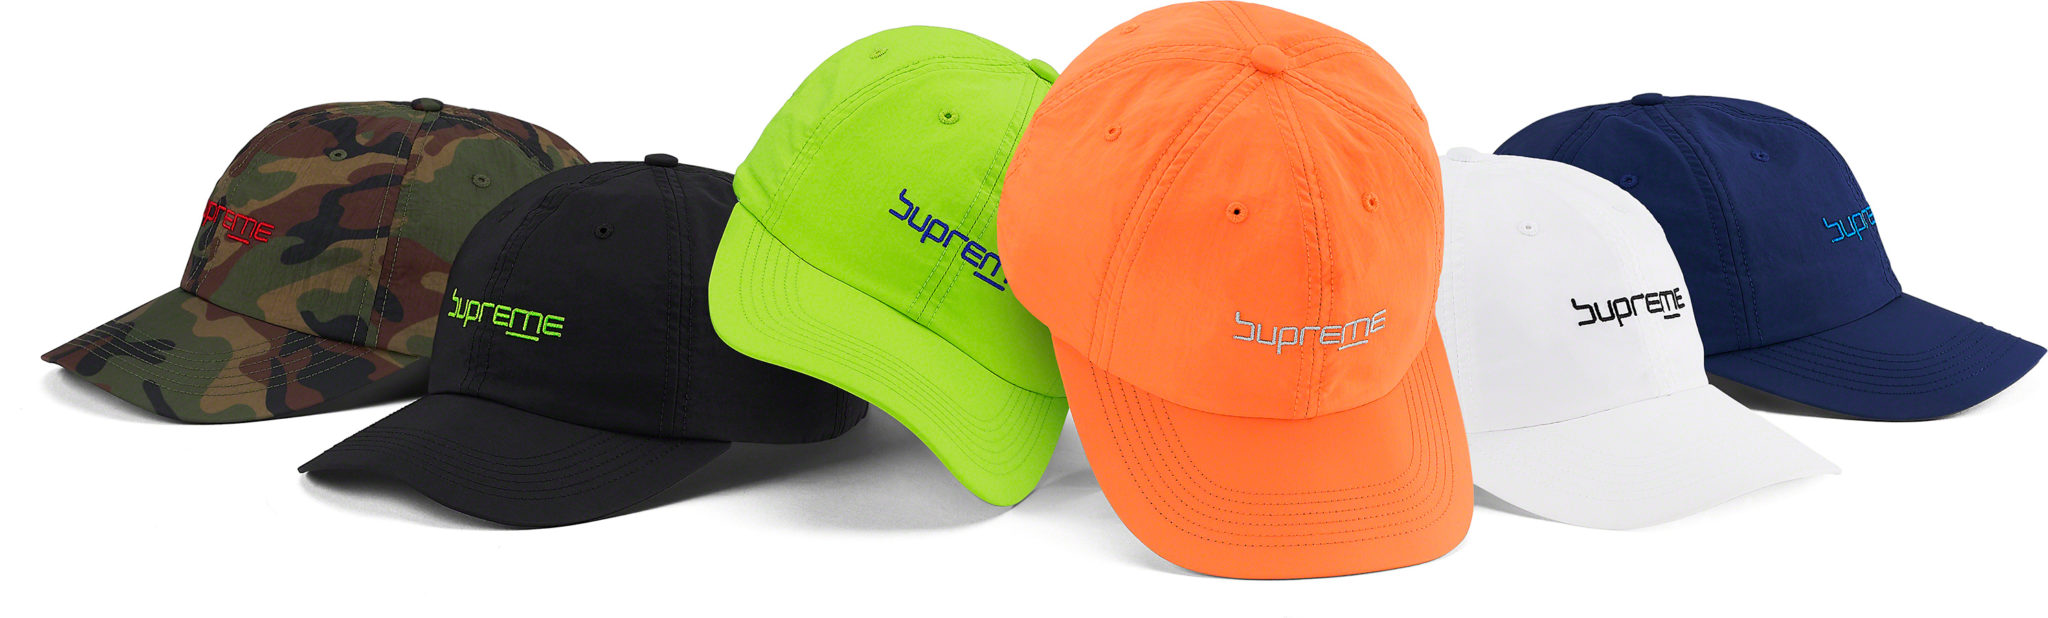 【ハット キャップ/HATS CAPS まとめ】 シュプリーム (SUPREME) 2020 SPRING/SUMMER コレクション (2020年 春夏)